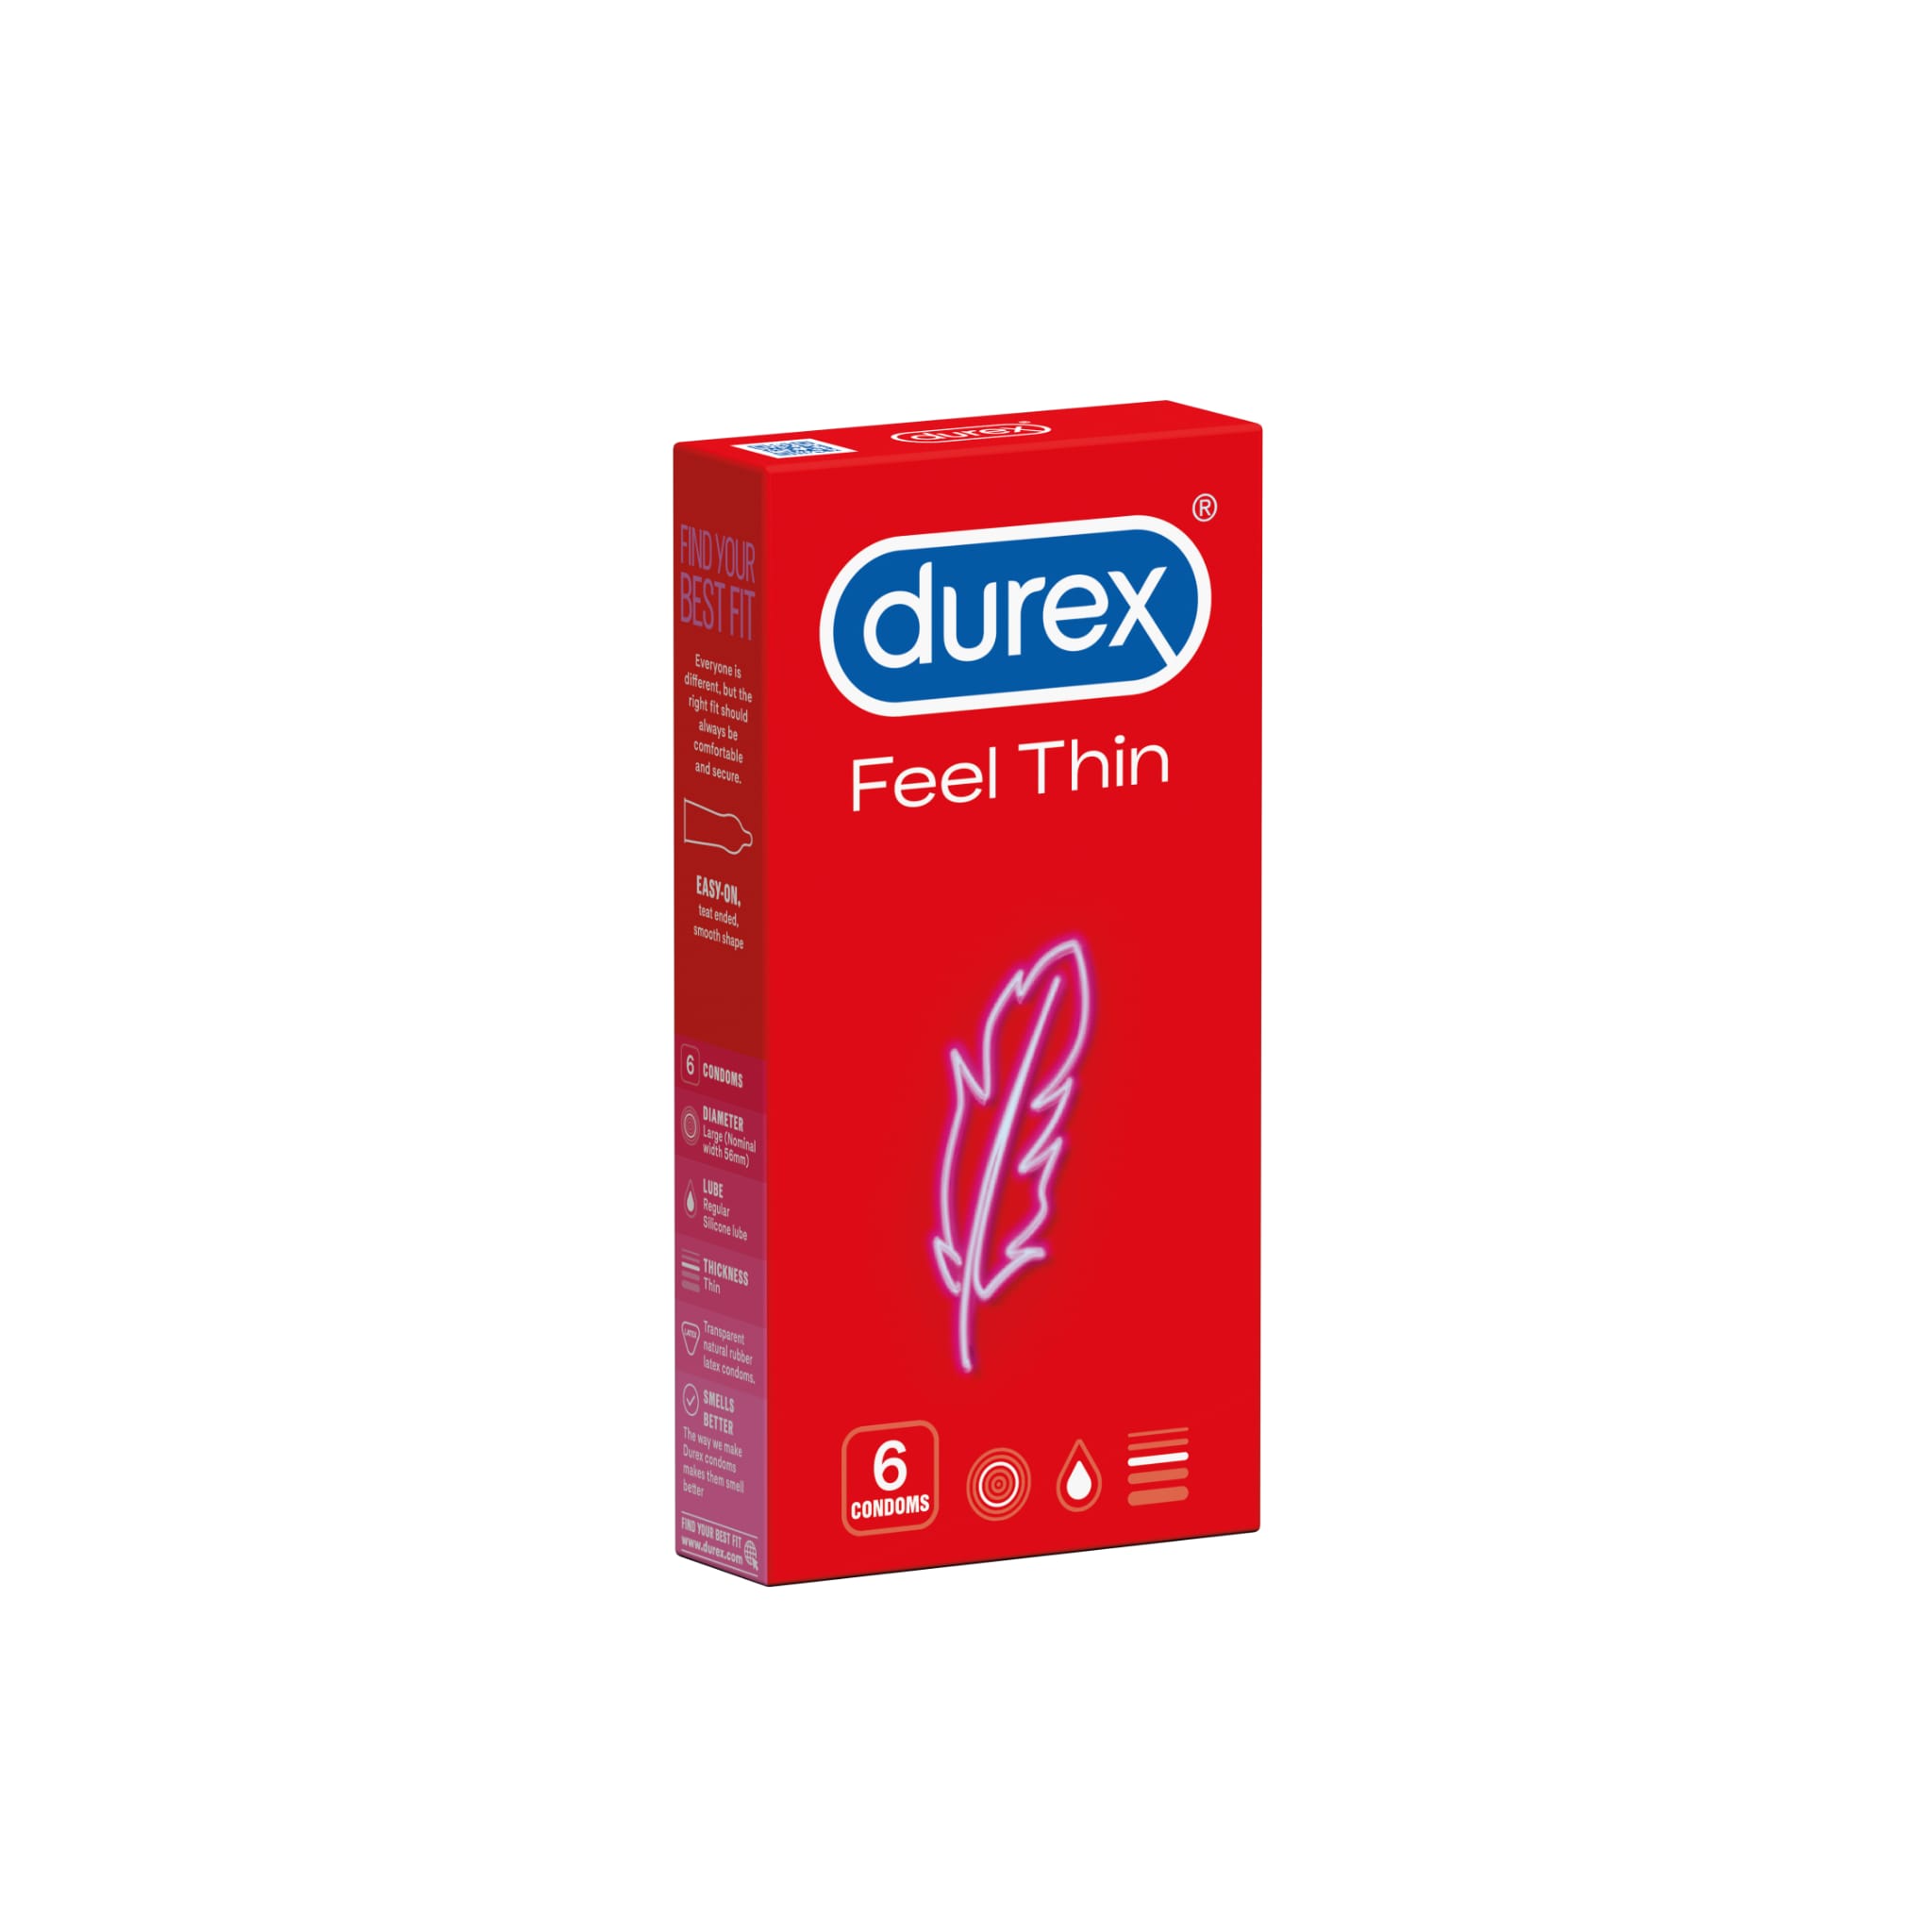 Durex prezervative feel thin, 6 buc, Reckitt Benckiser